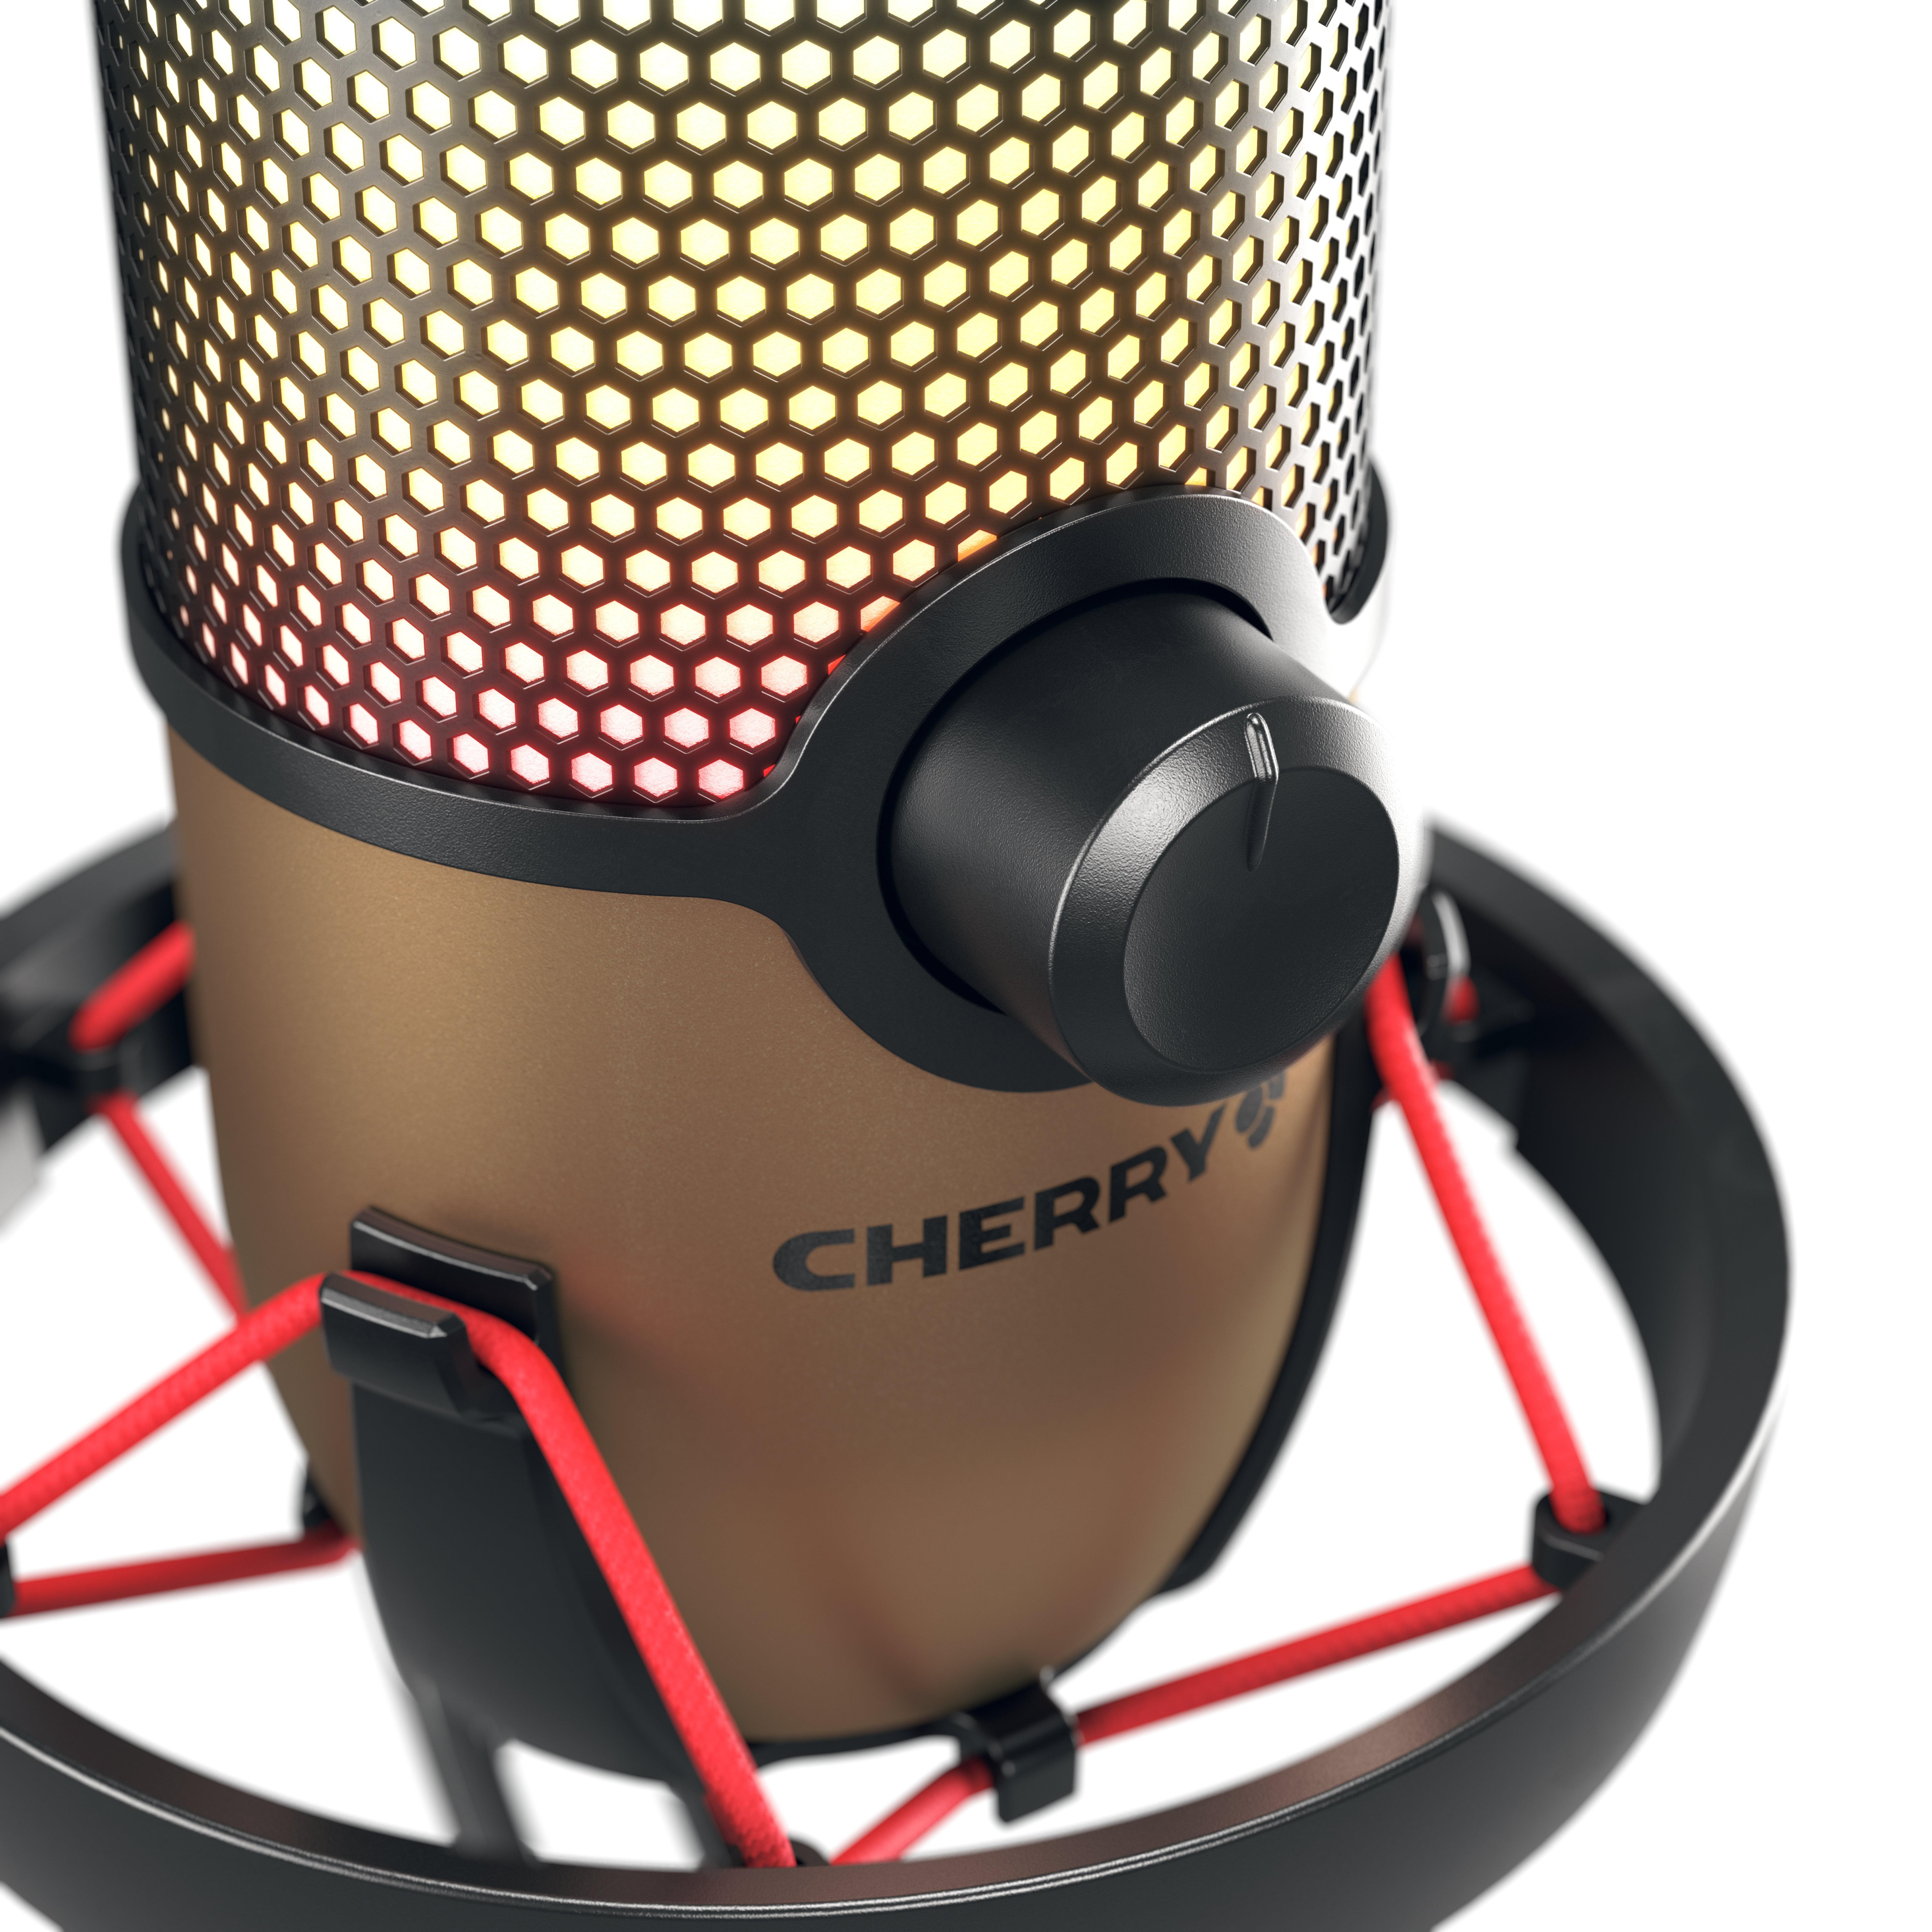 CHERRY Mikrofon, UM Schwarz/Kupfer 9.0